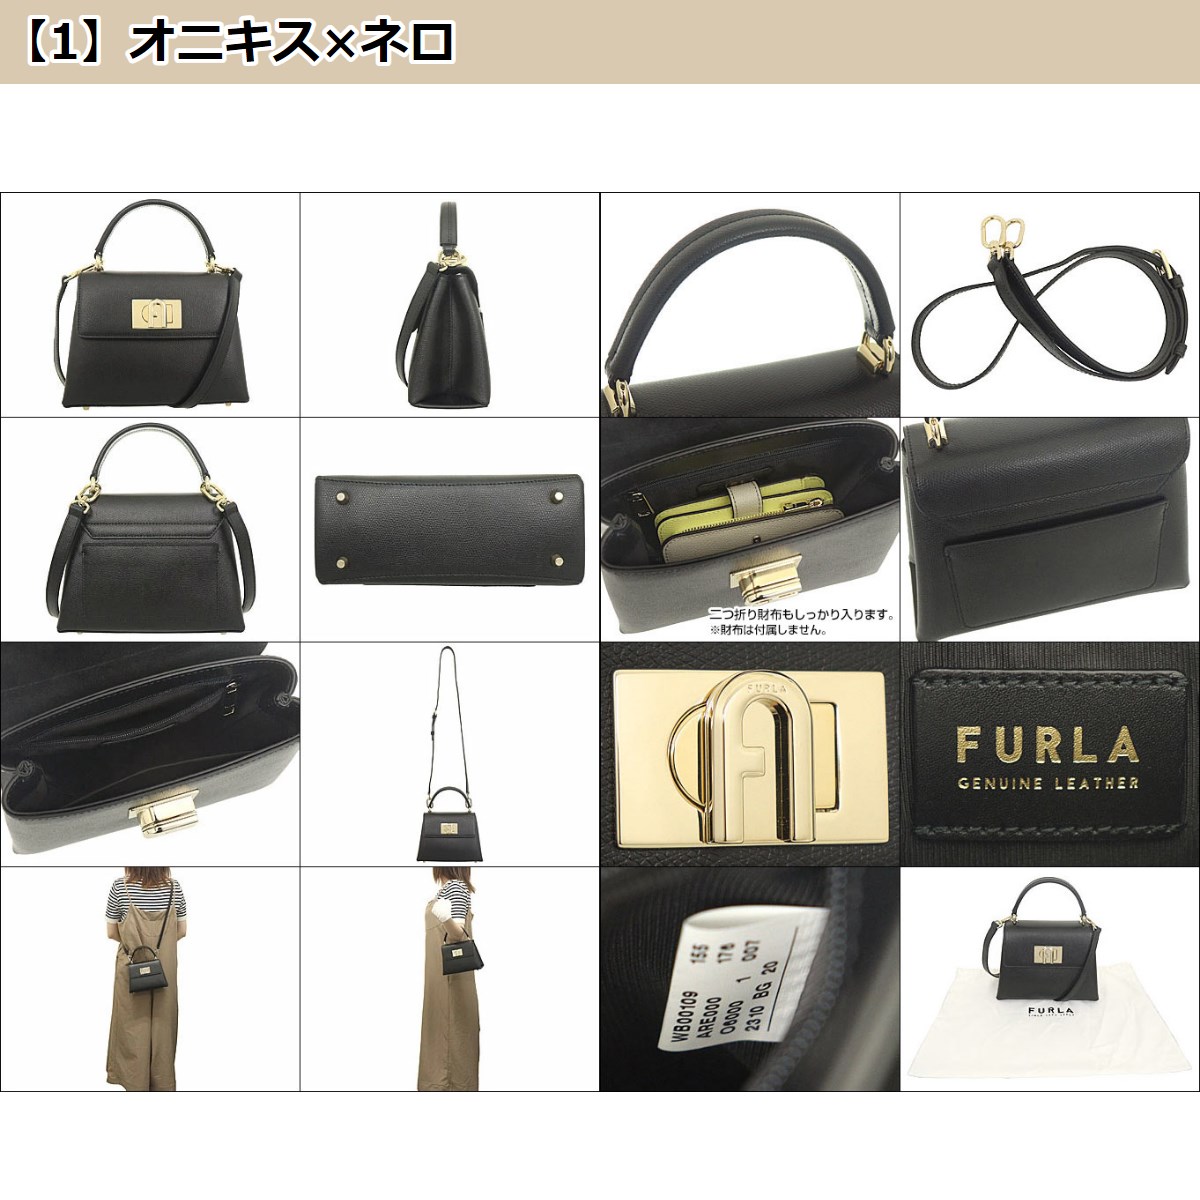 ファッションの フルラ FURLA バッグ ハンドバッグ WB00109 ARE000 フルラ 1927 レザー ミニ トップ ハンドル バッグ レディース